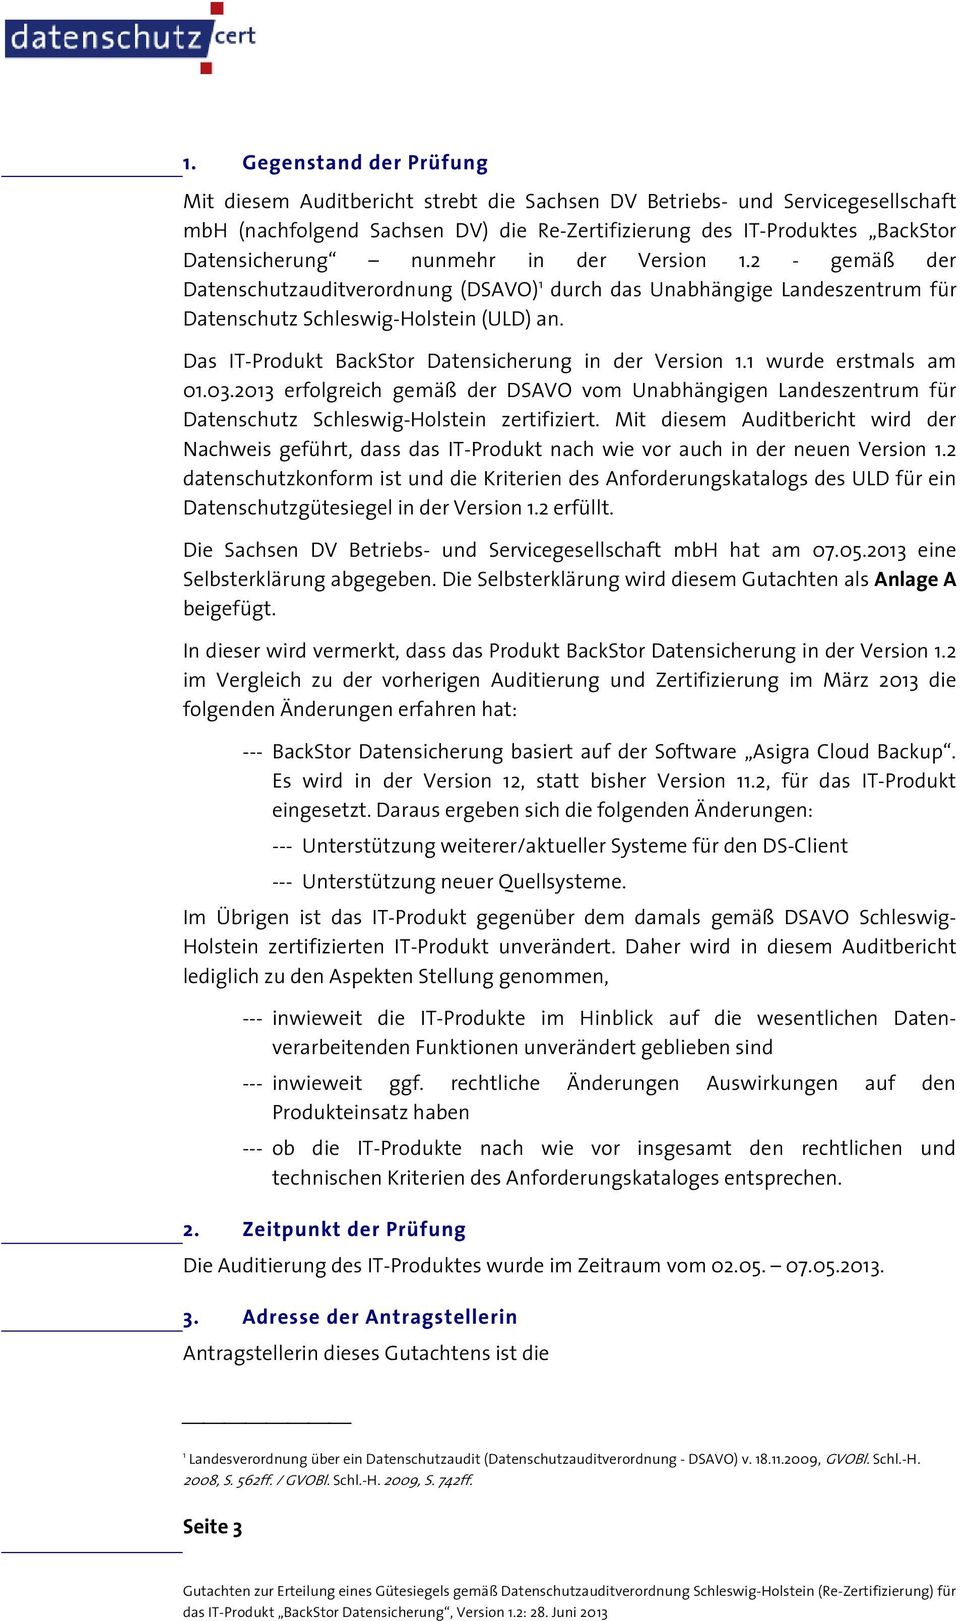 Das IT-Produkt BackStor Datensicherung in der Version 1.1 wurde erstmals am 01.03.2013 erfolgreich gemäß der DSAVO vom Unabhängigen Landeszentrum für Datenschutz Schleswig-Holstein zertifiziert.